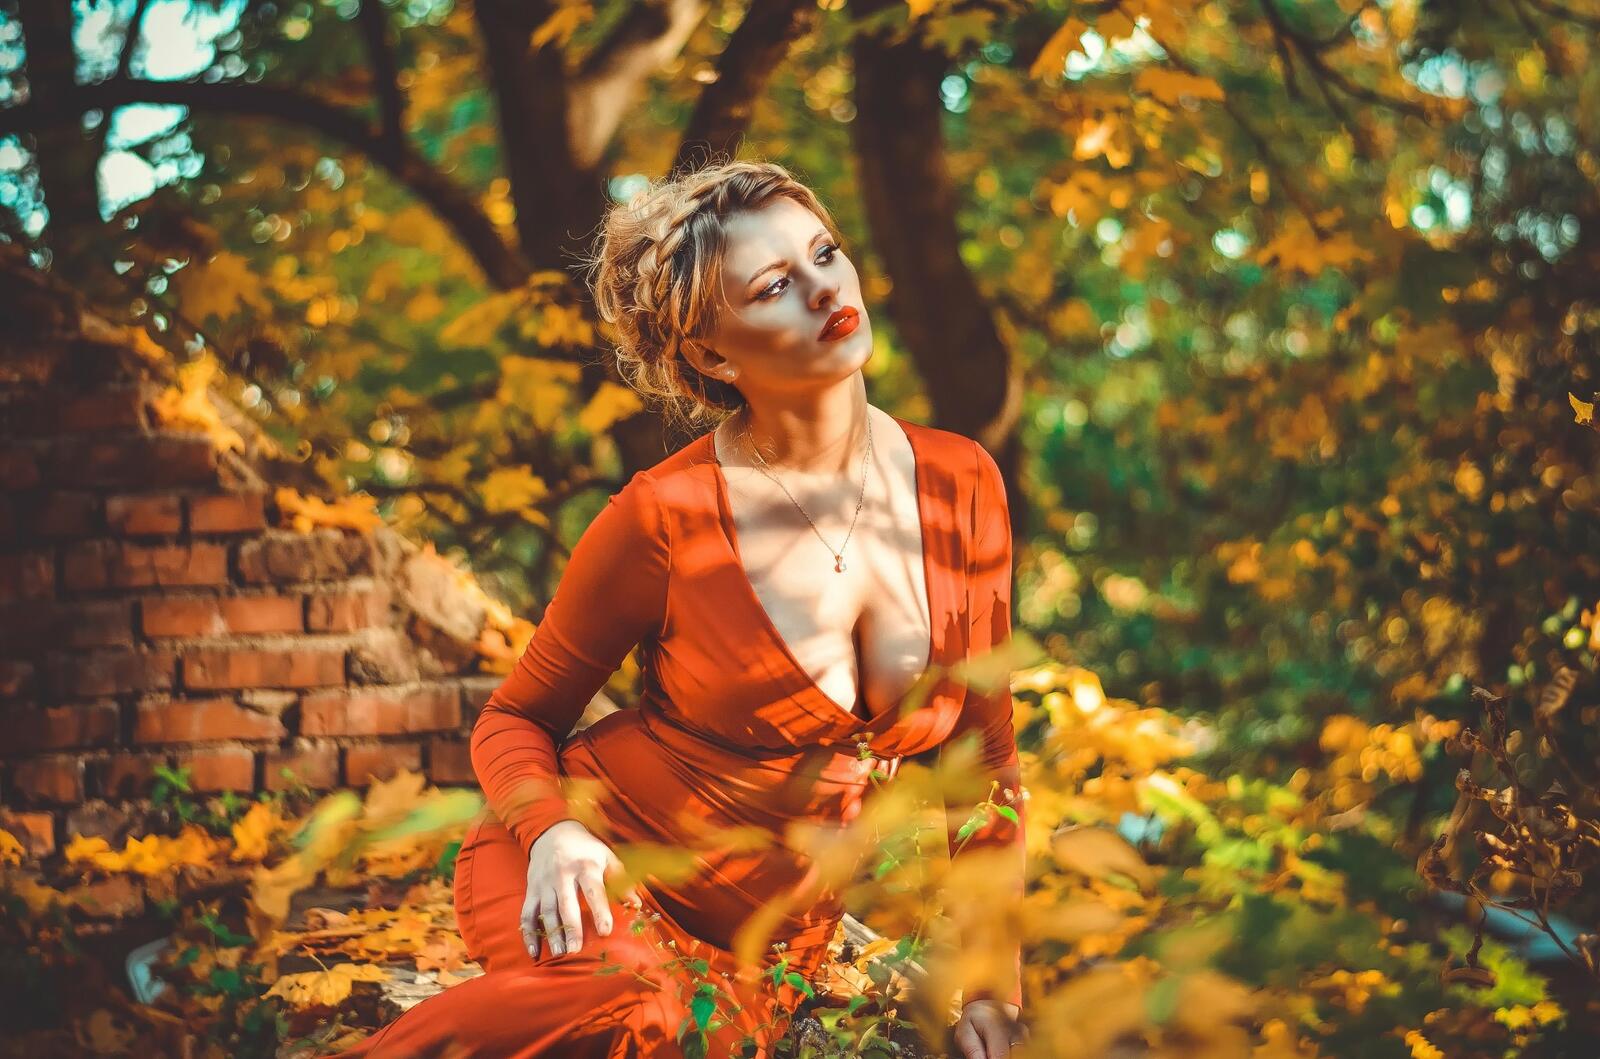 免费照片金发大胸美女在秋日森林中的自拍照